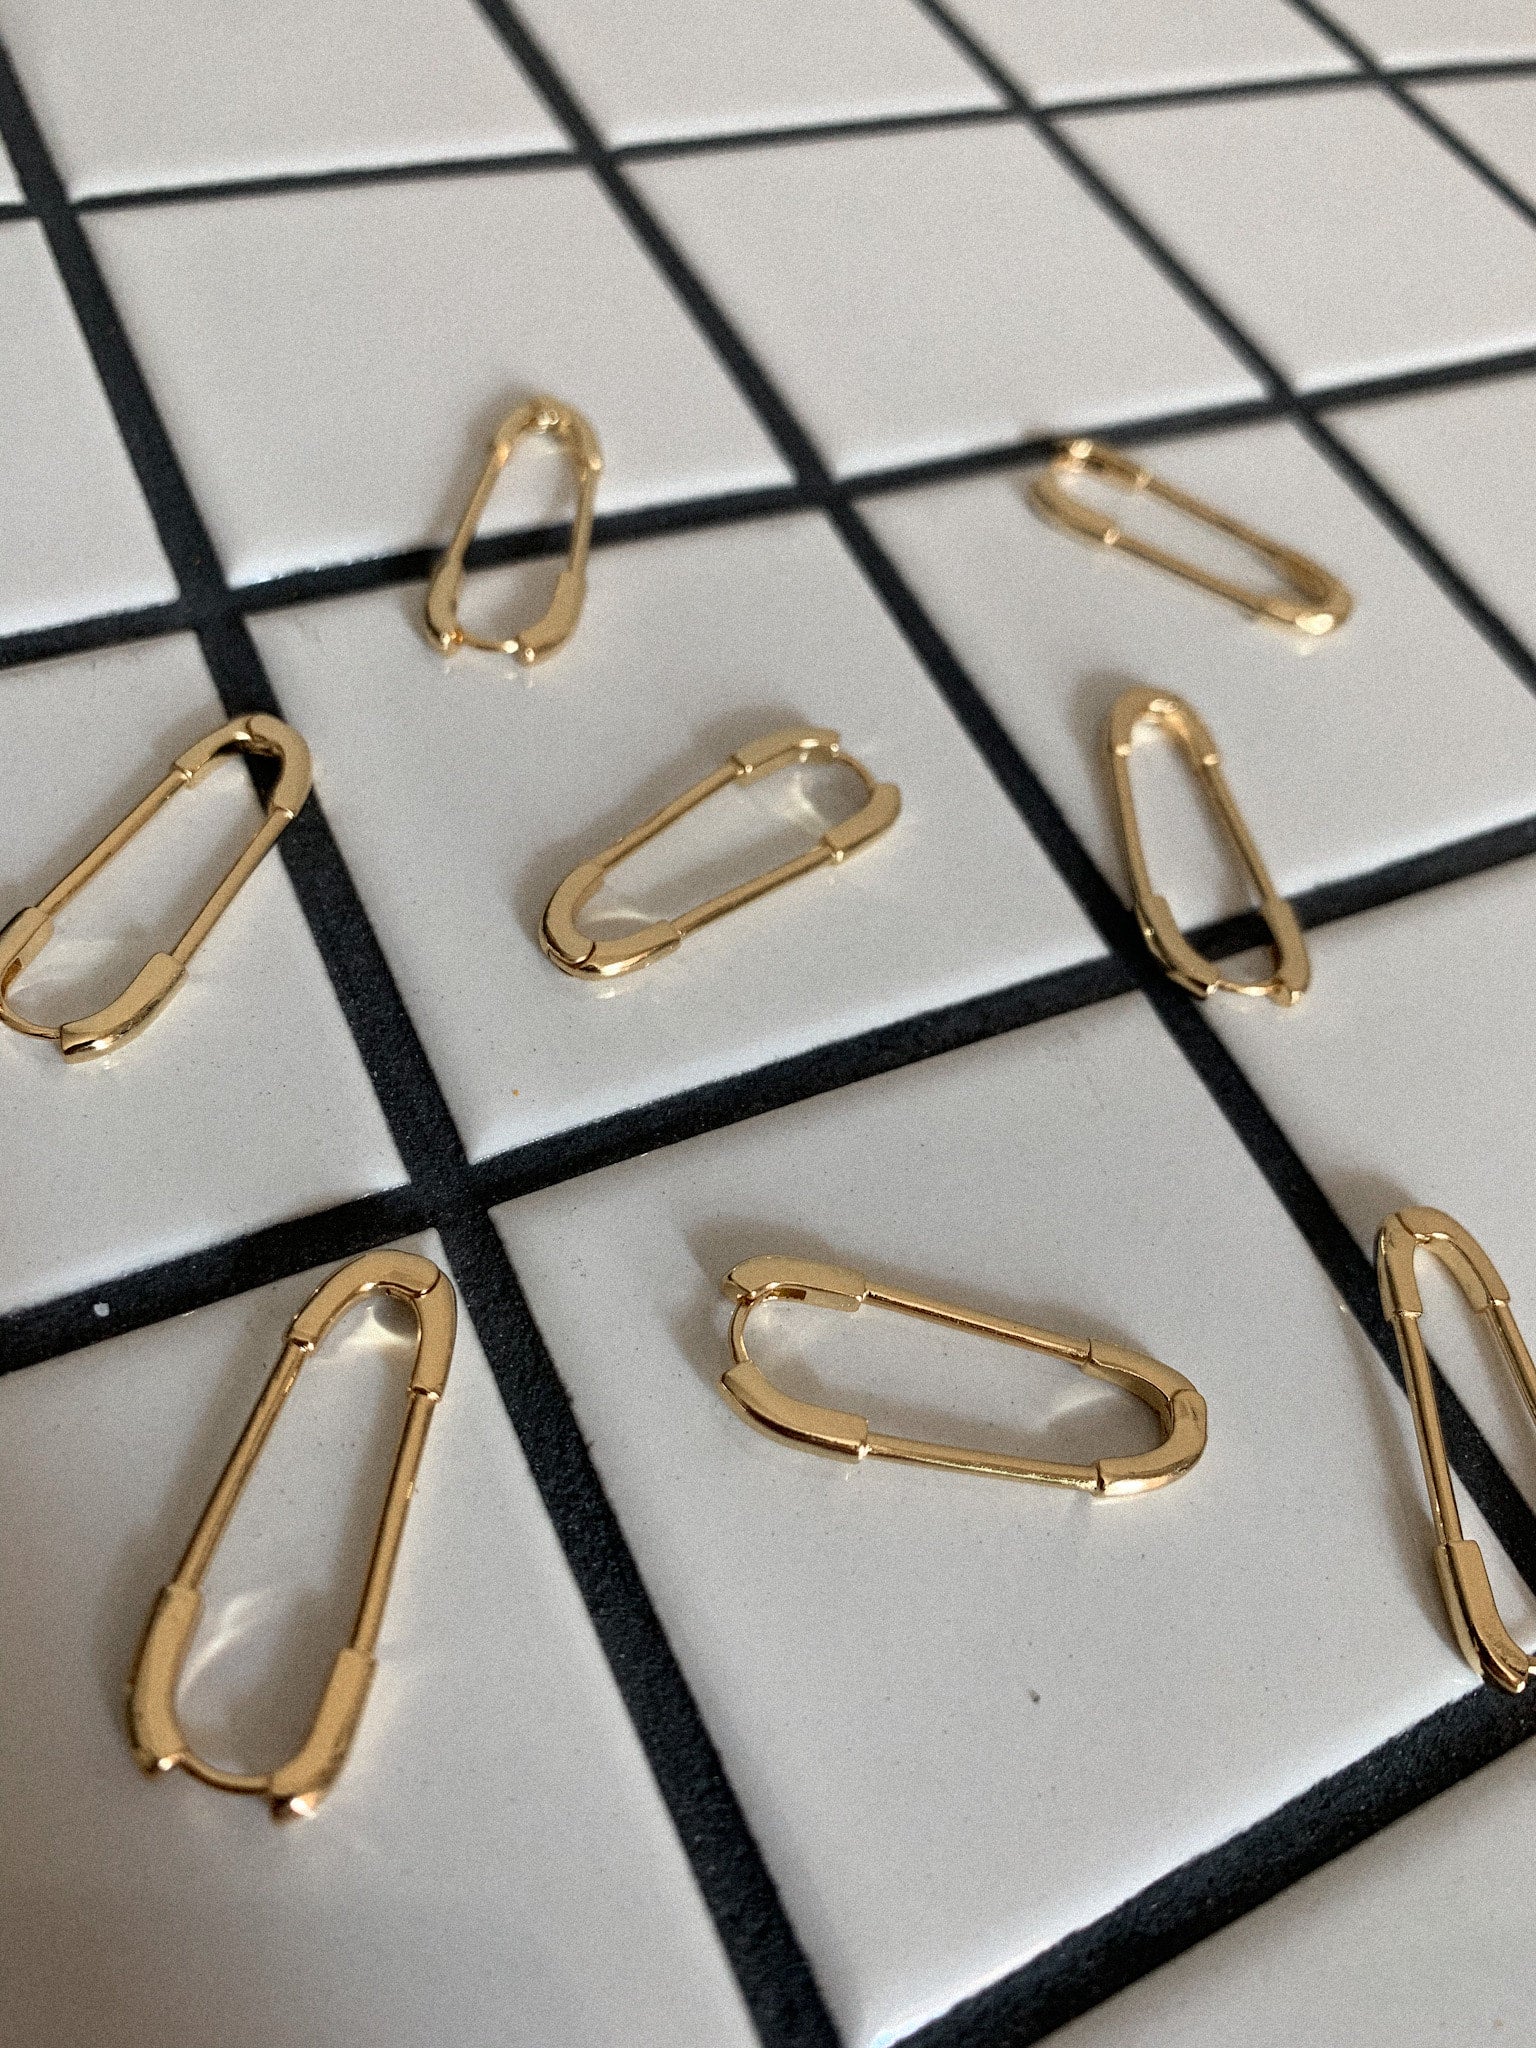 Size #4 (2 1/4) Gold Safety Pins | Shop Boleks